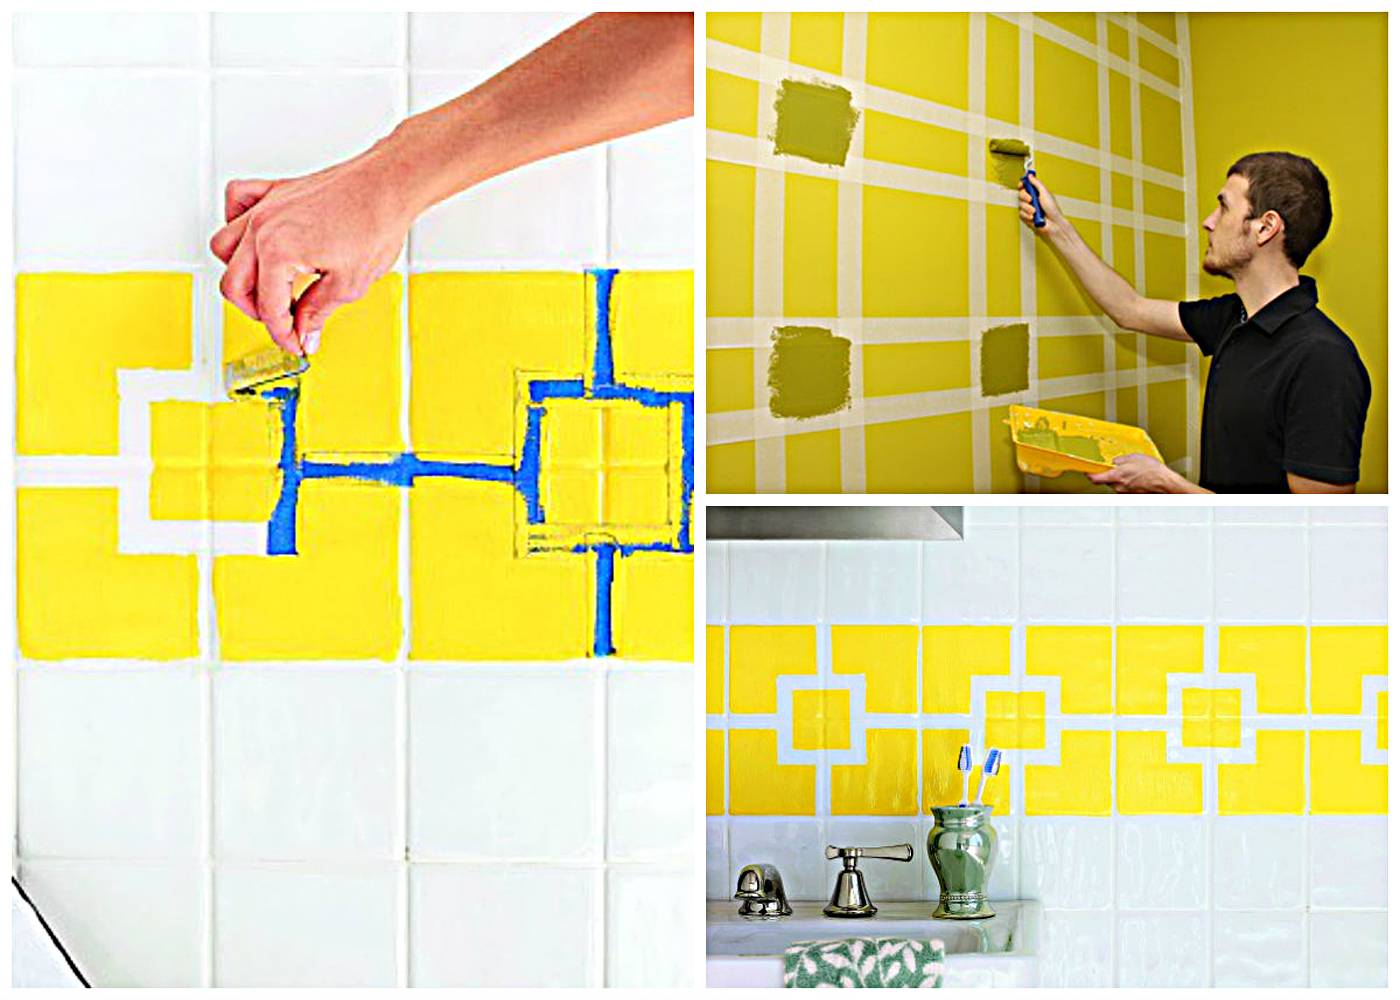 Покрасить плитку в ванной: как выбрать подходящую краску, подготовить поверхность и правильно нанести краску - 23 фото